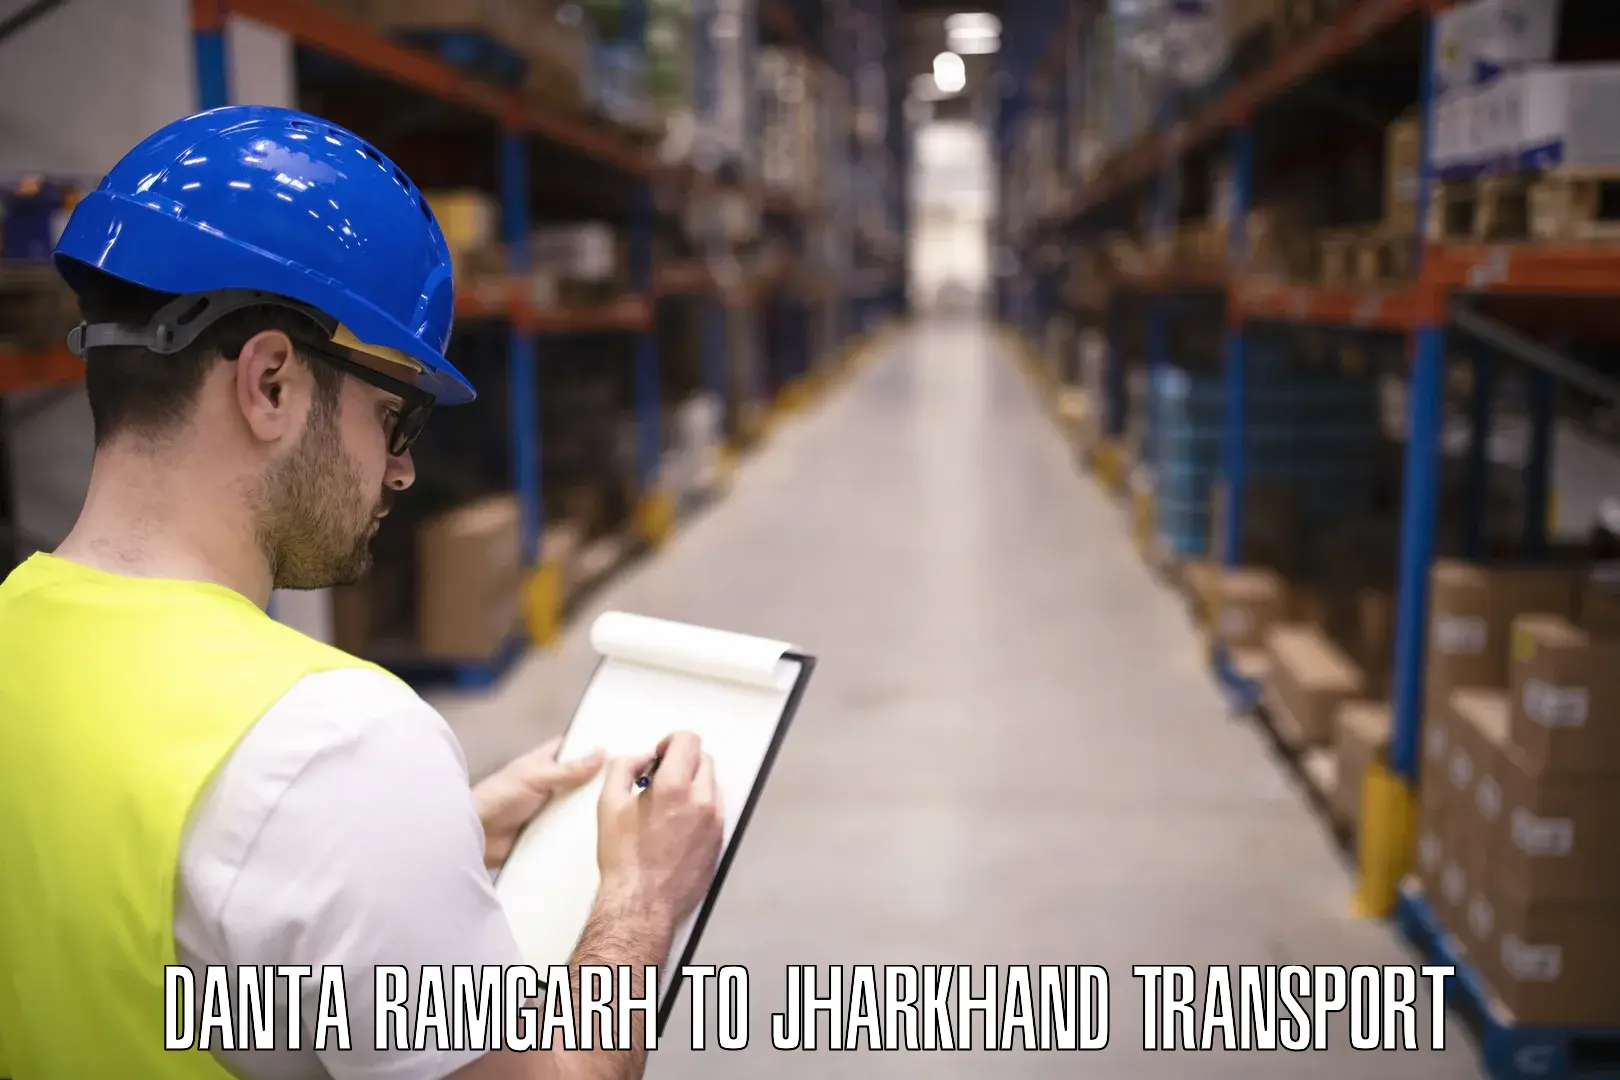 Shipping services Danta Ramgarh to Dhanbad